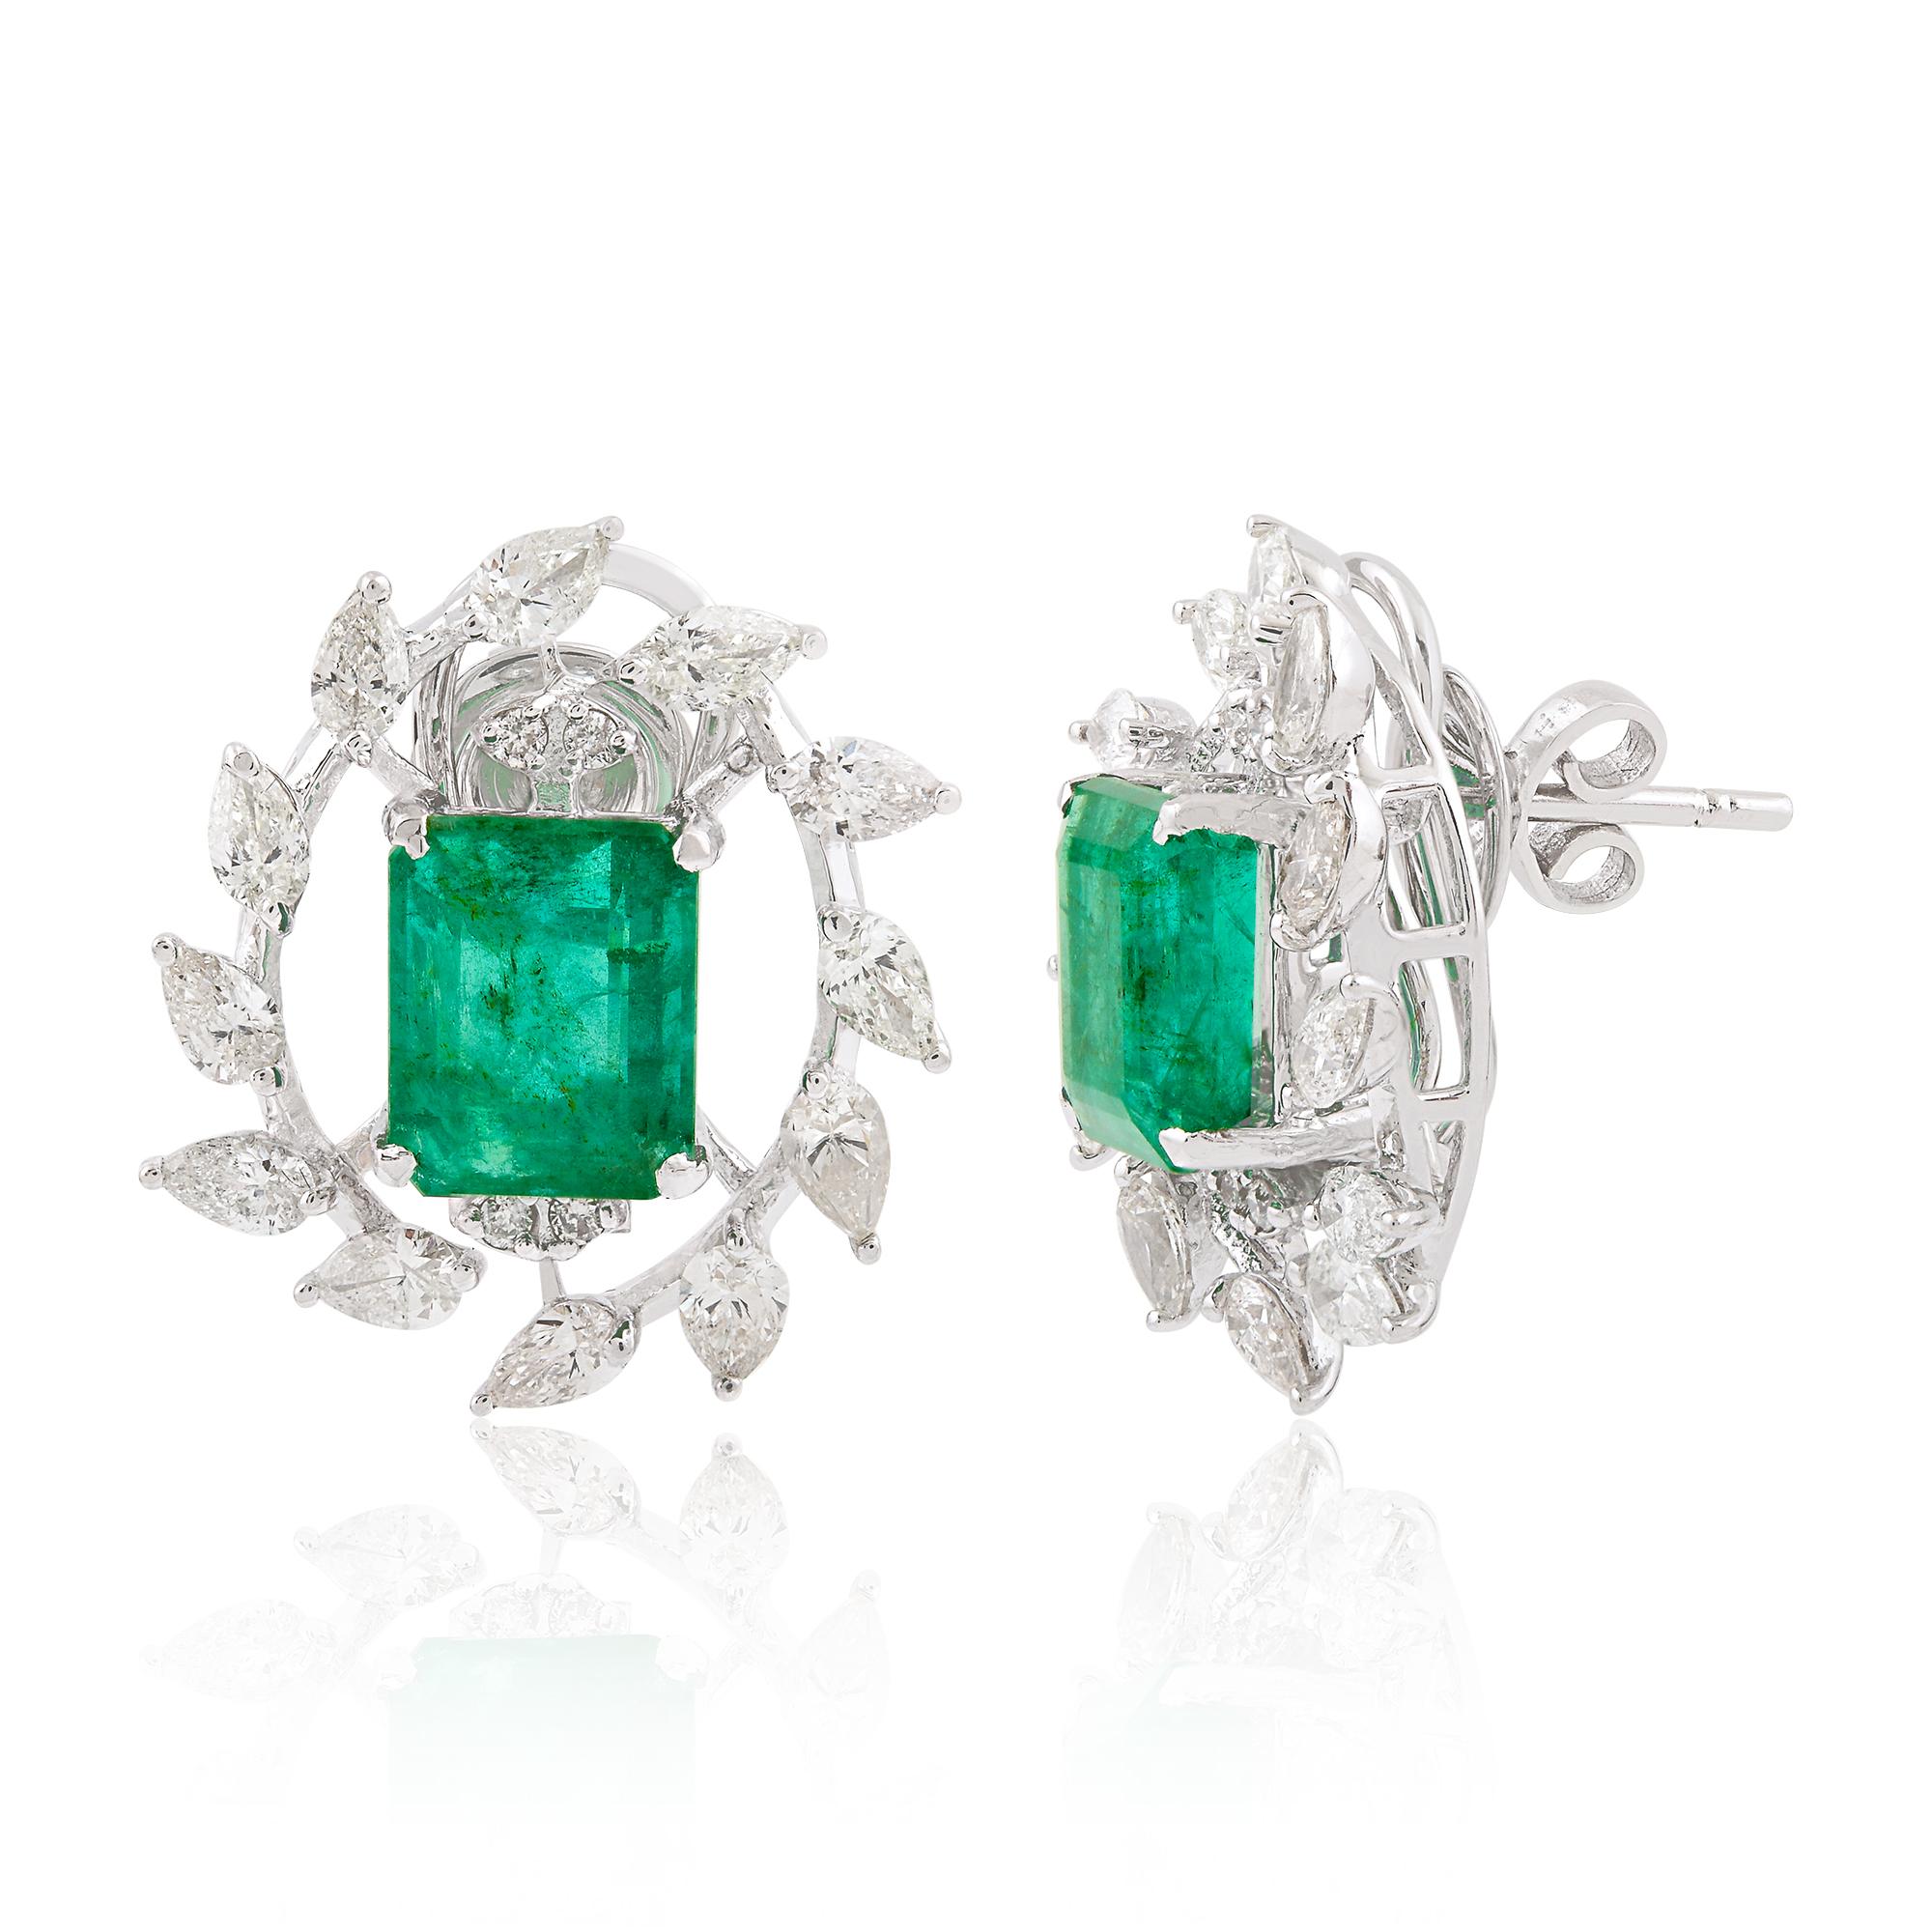 Die birnenförmigen Diamanten mit ihrer charakteristischen tropfenförmigen Form ergänzen den Smaragd und verleihen den Ohrringen zusätzliches Funkeln und Brillanz. Die Diamanten werden sorgfältig nach ihrer Qualität ausgewählt, wobei auch der